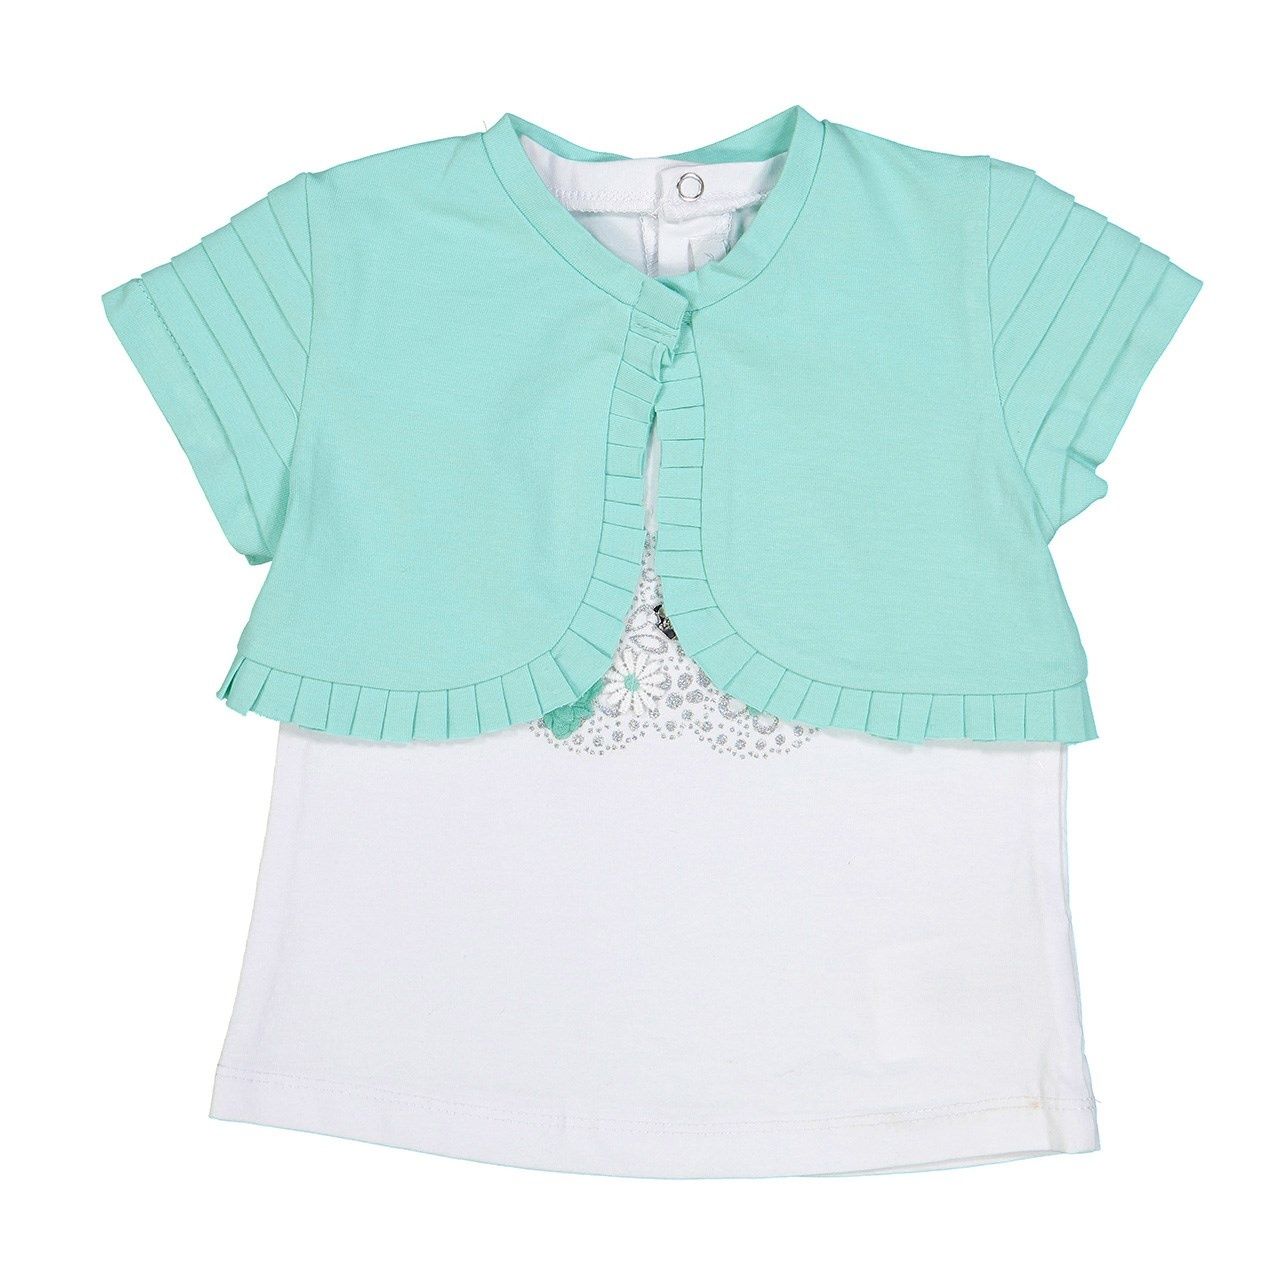 ست تی شرت و رویه نوزادی دخترانه مایورال مدل MA 1038034 -  - 1